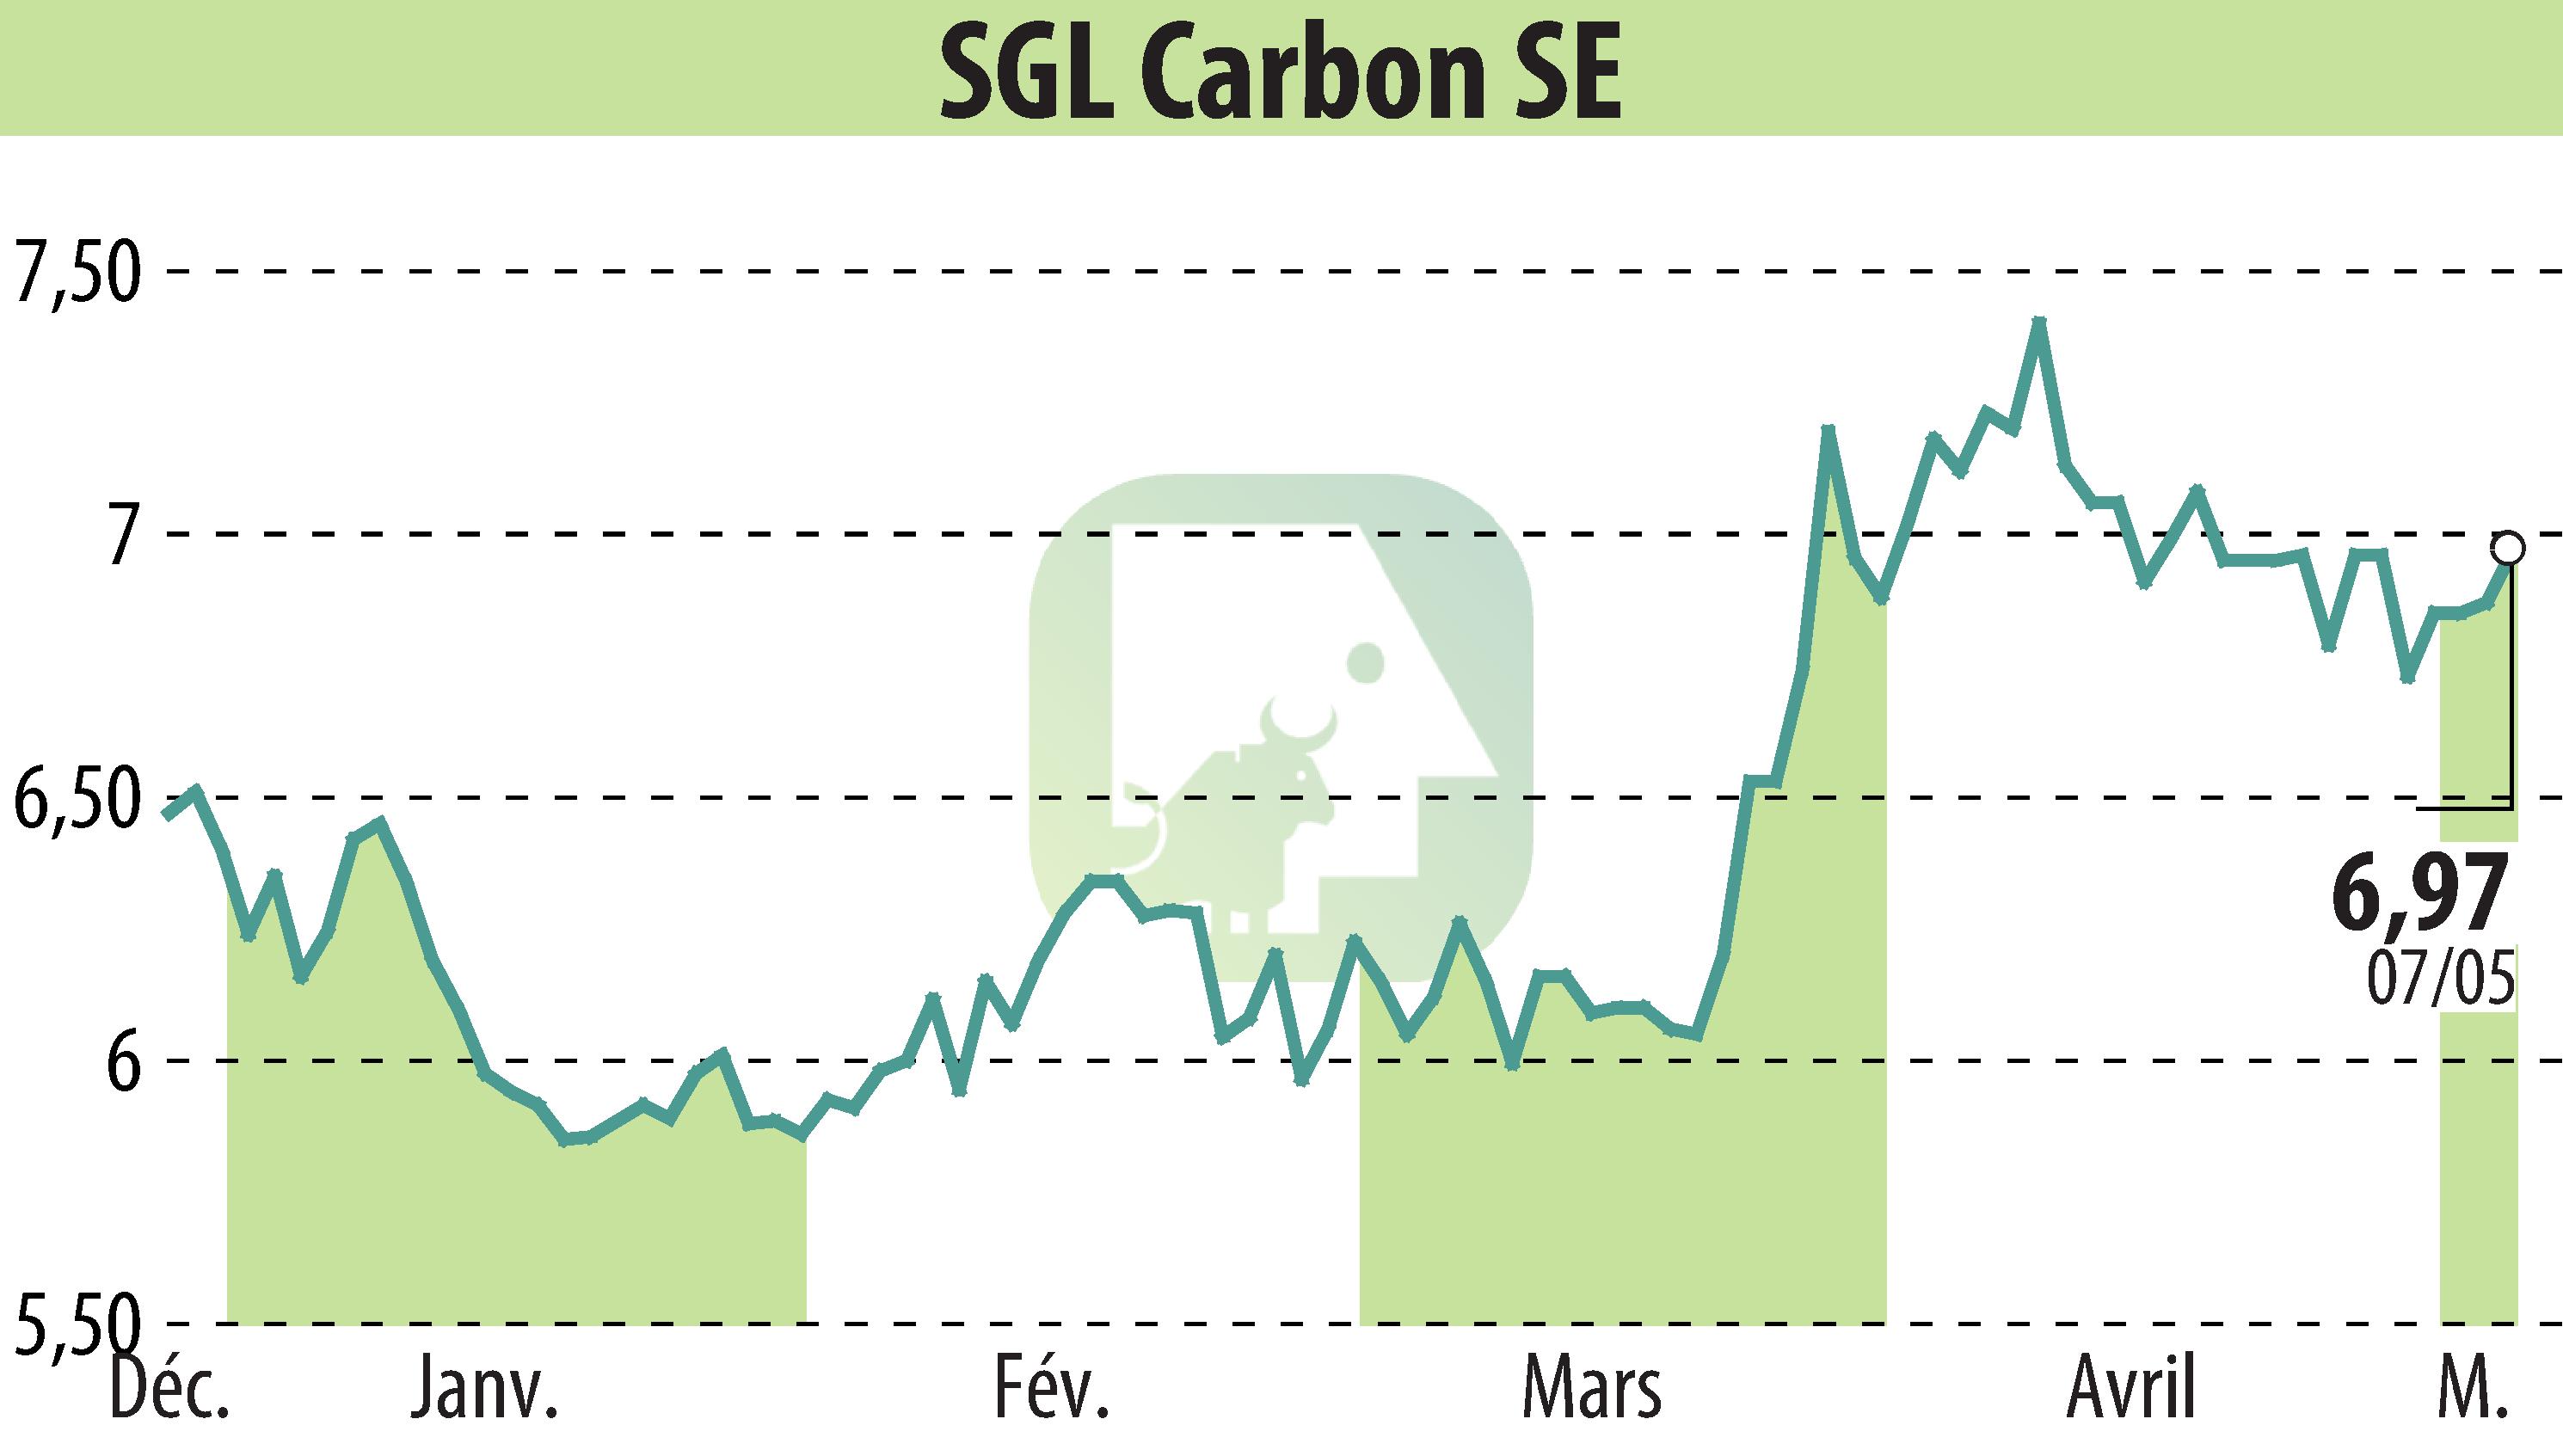 Graphique de l'évolution du cours de l'action SGL Carbon AG (EBR:SGL).